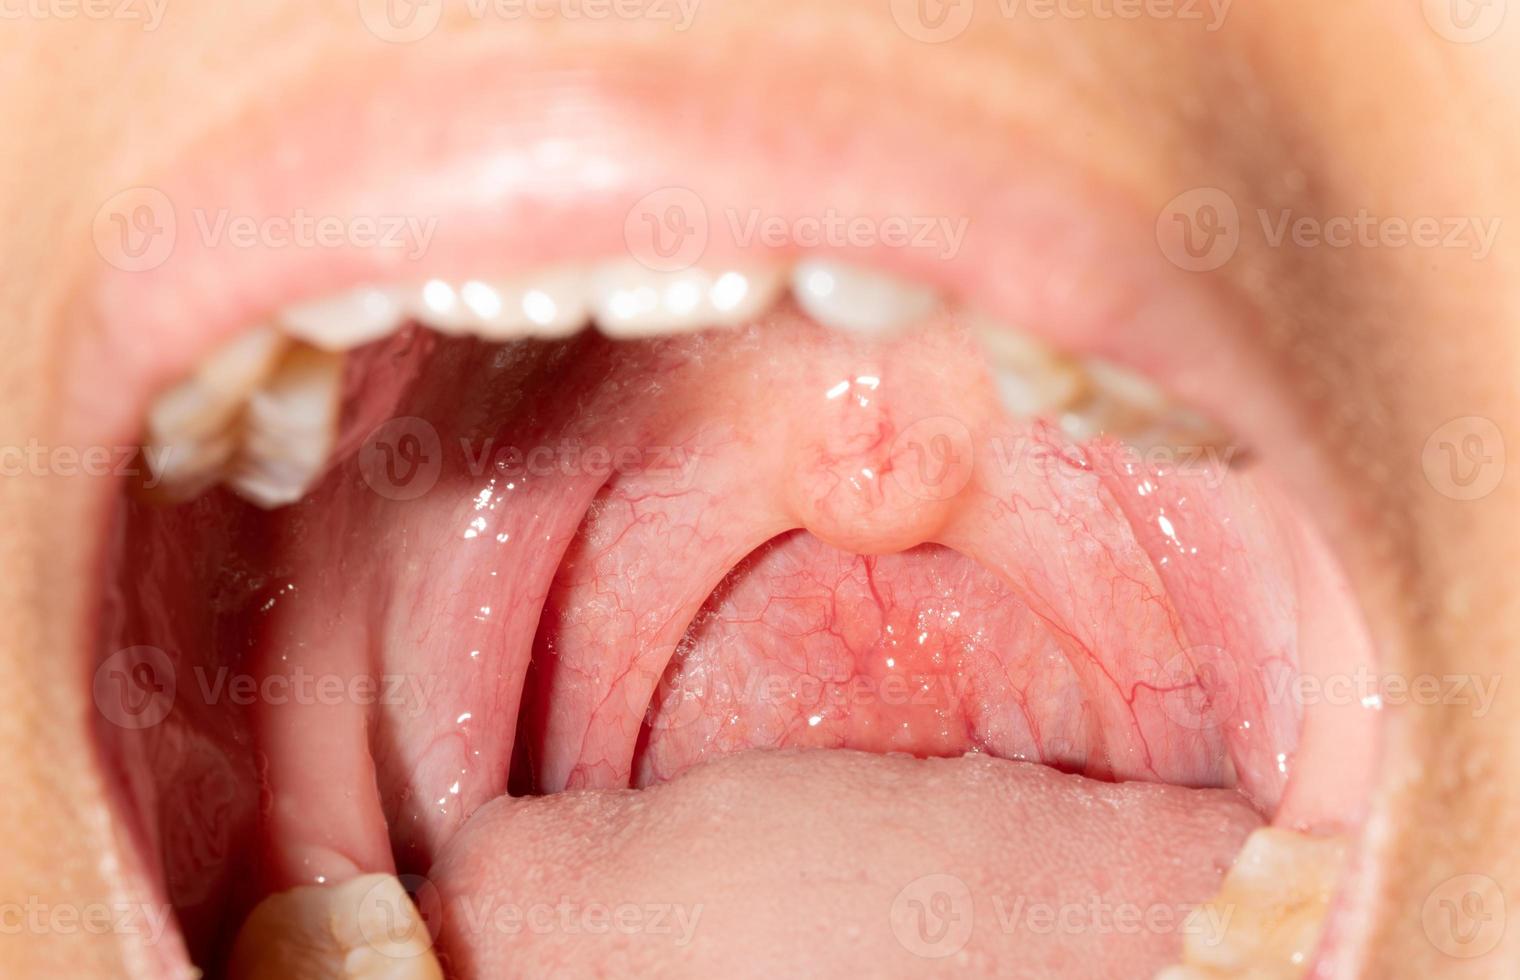 mal de gorge avec gorge gonflée. bouche ouverte en gros plan avec gonflement de la paroi pharyngienne postérieure et luette et amygdale. follicules grippaux dans la paroi postérieure du pharynx. des voies respiratoires supérieures. photo